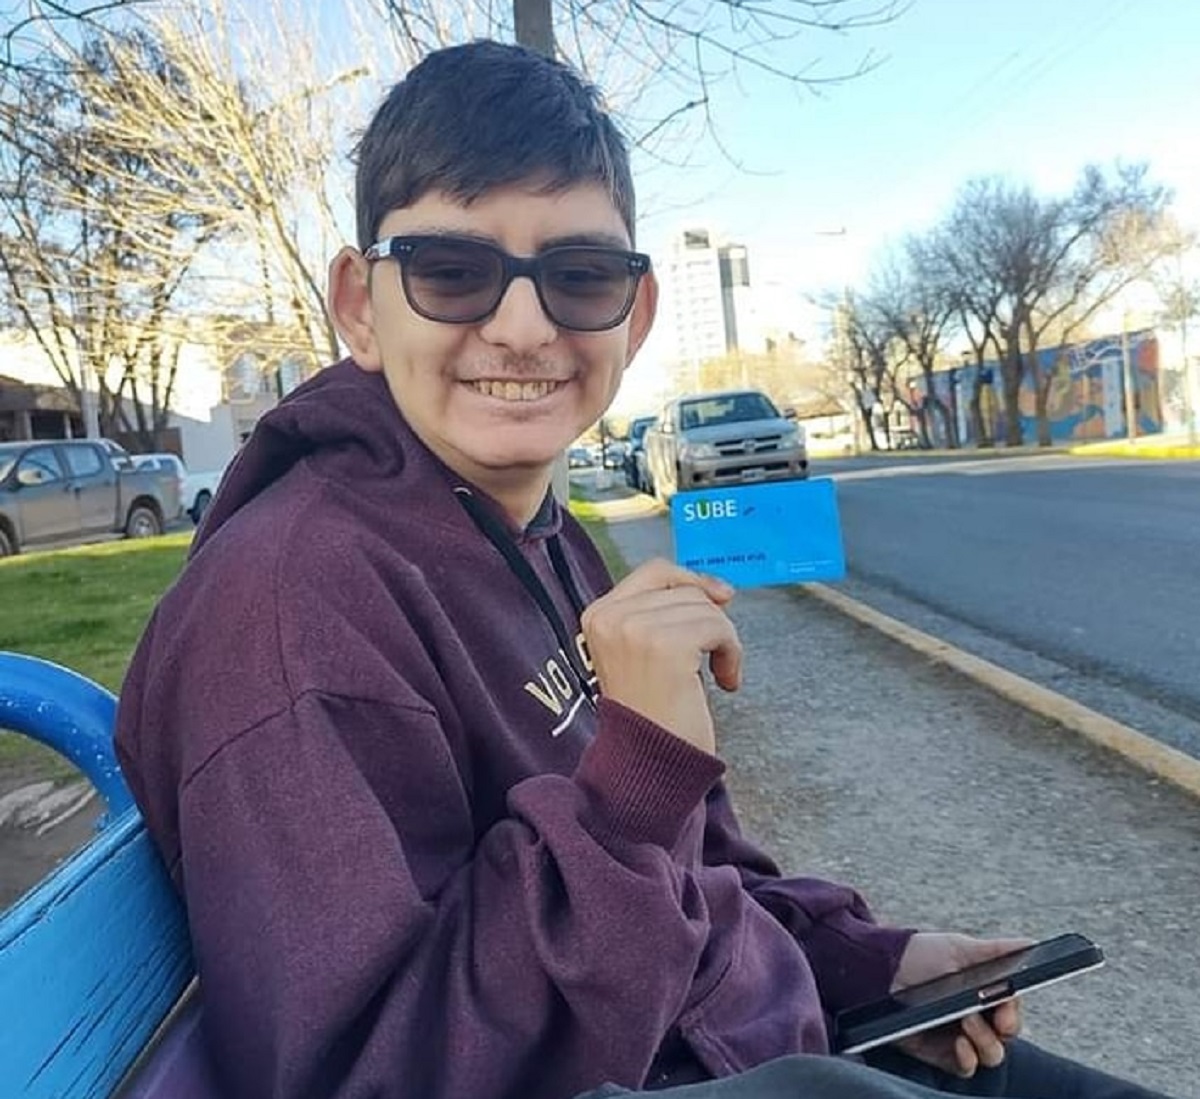 Le robaron el celular a un joven con autismo en un colectivo de Neuquén: "Lo necesita, está muy afectado"